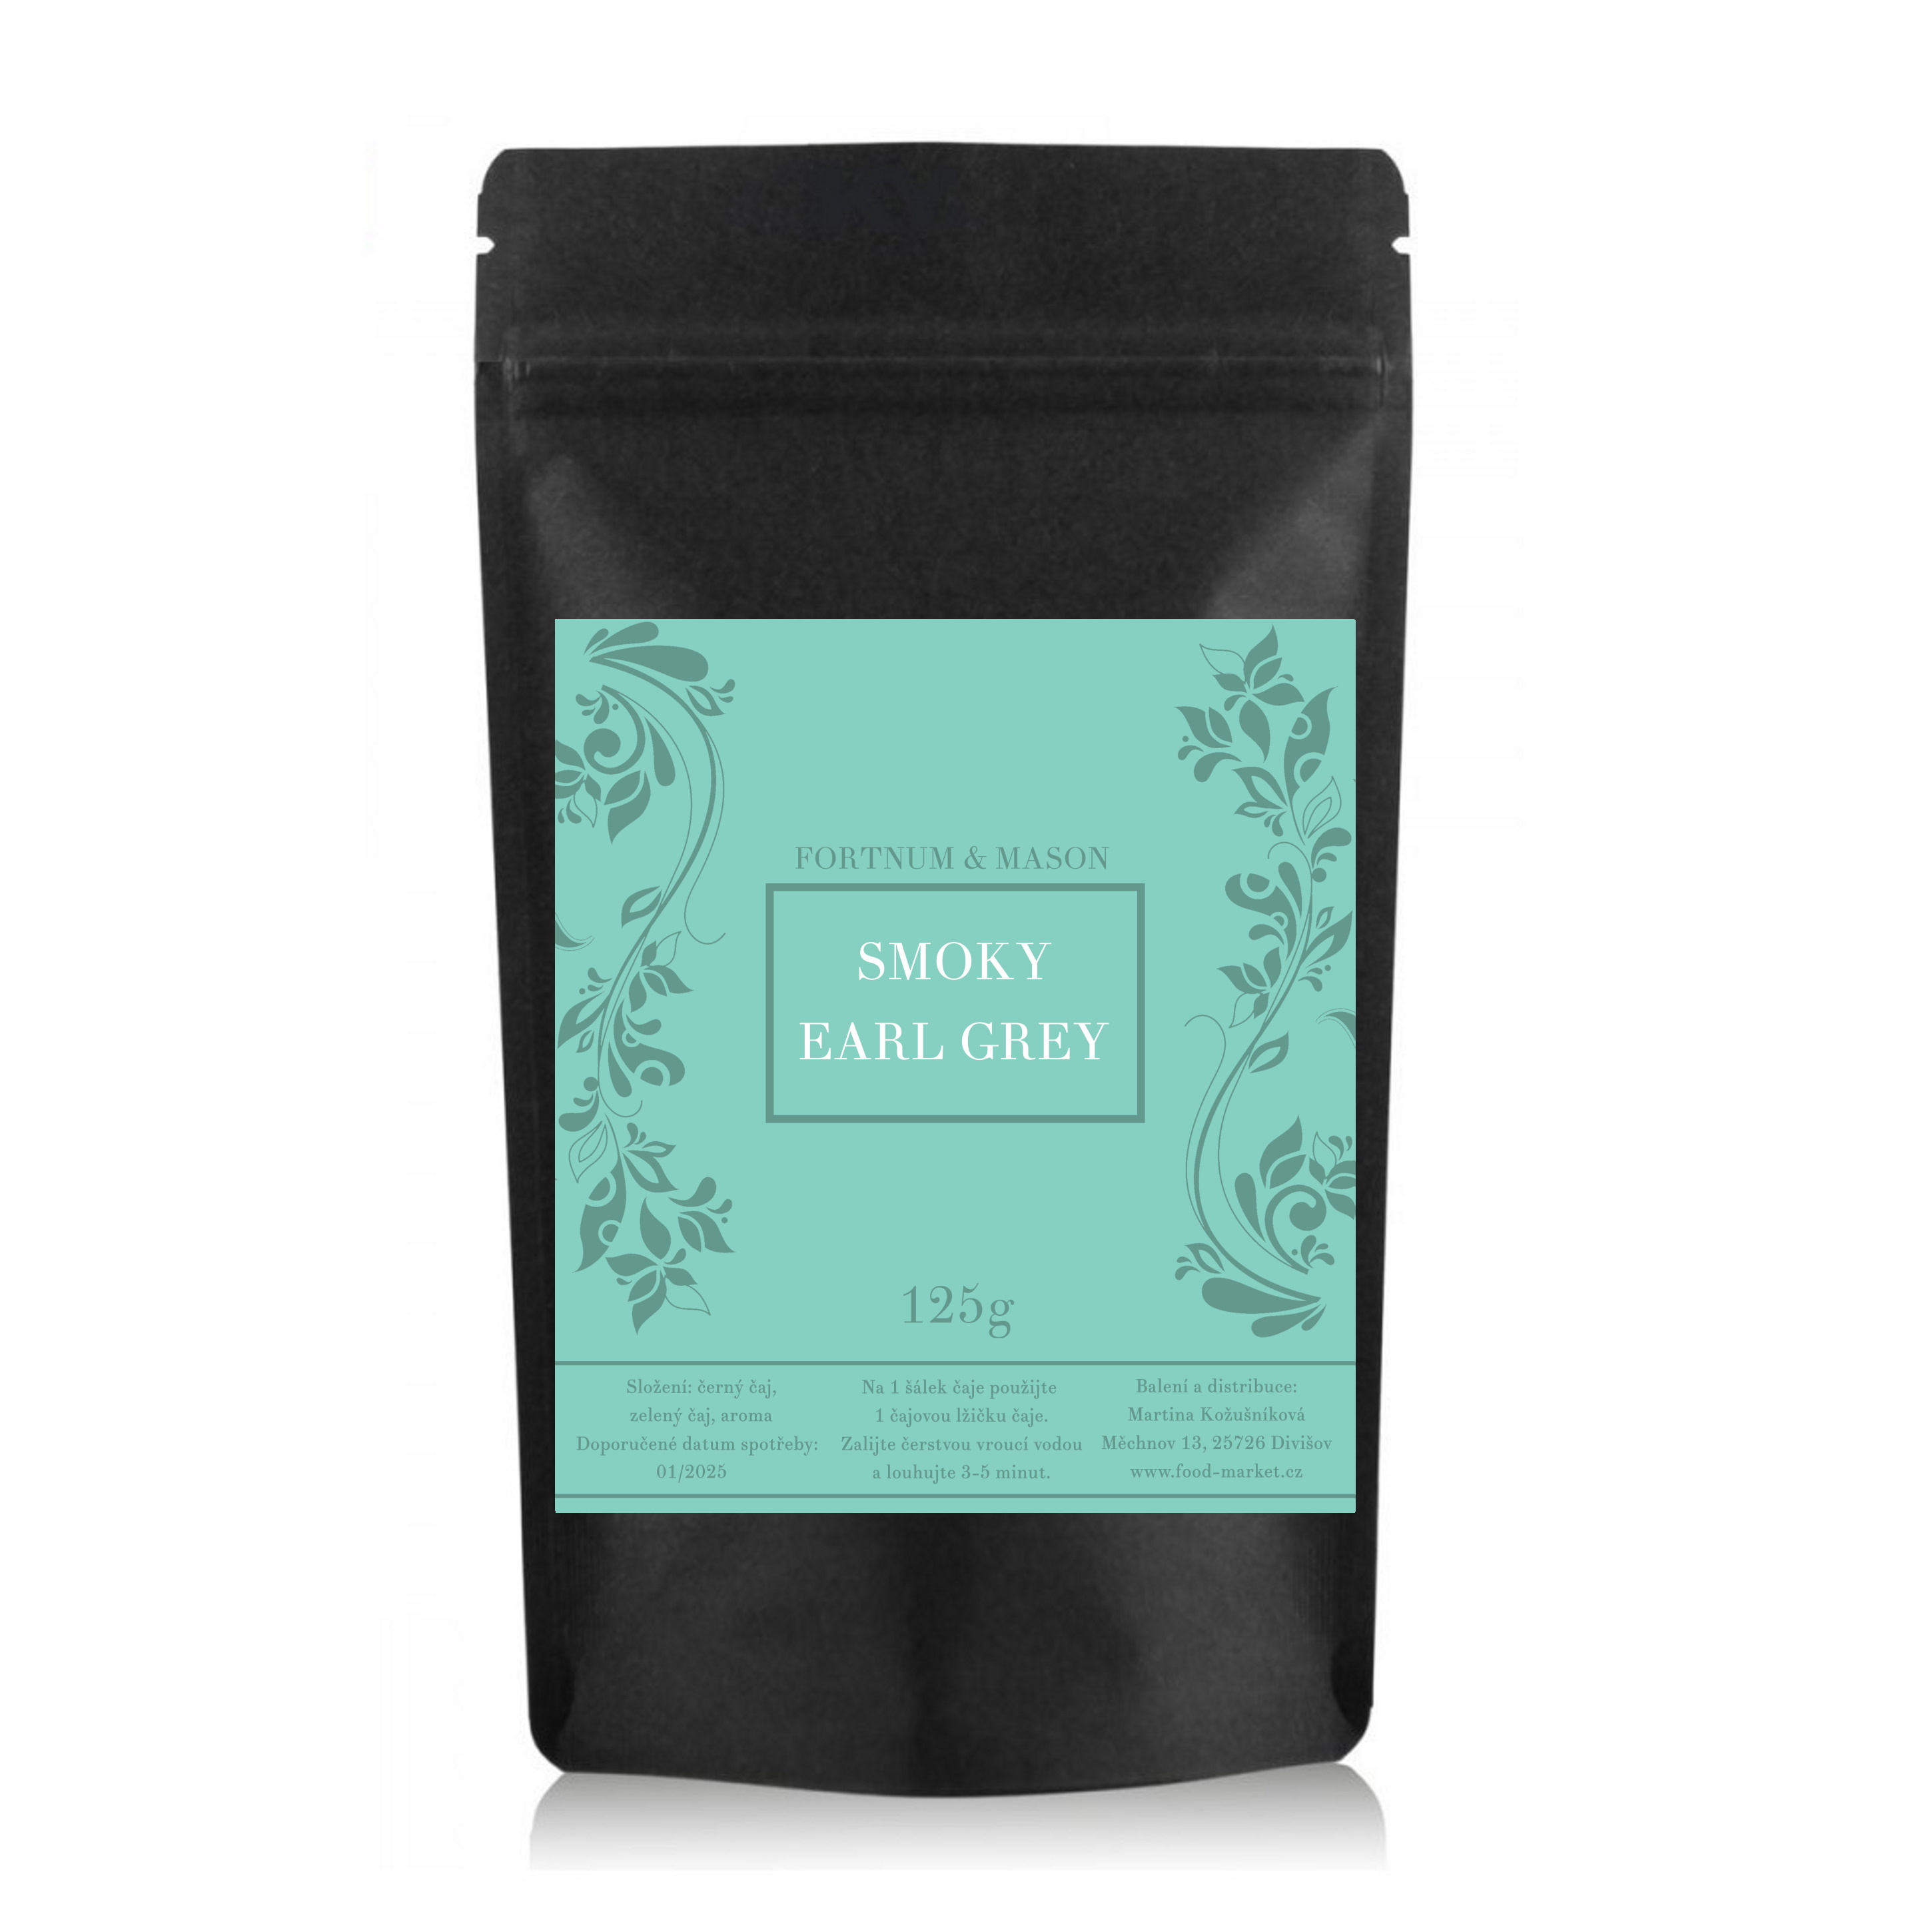 černý čaj SMOKY EARL GREY sypaný 125g (sáček) od Fortnum & Mason